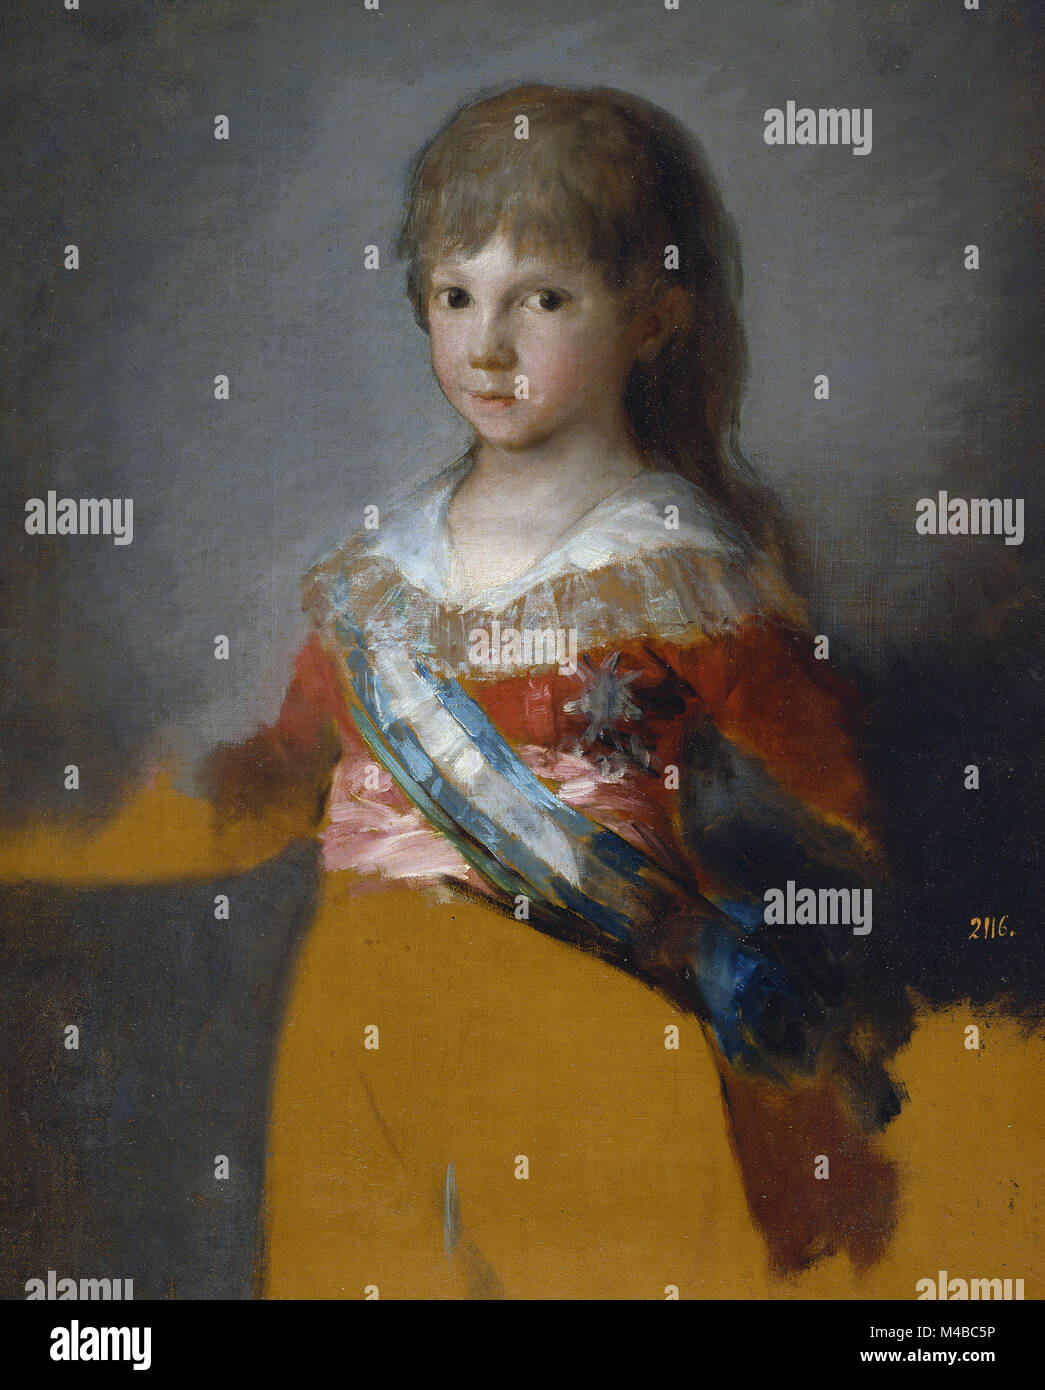 Francisco de Goya - Francisco de Paula Antonio de Borbón y Borbón Parma, infante de España Stock Photo